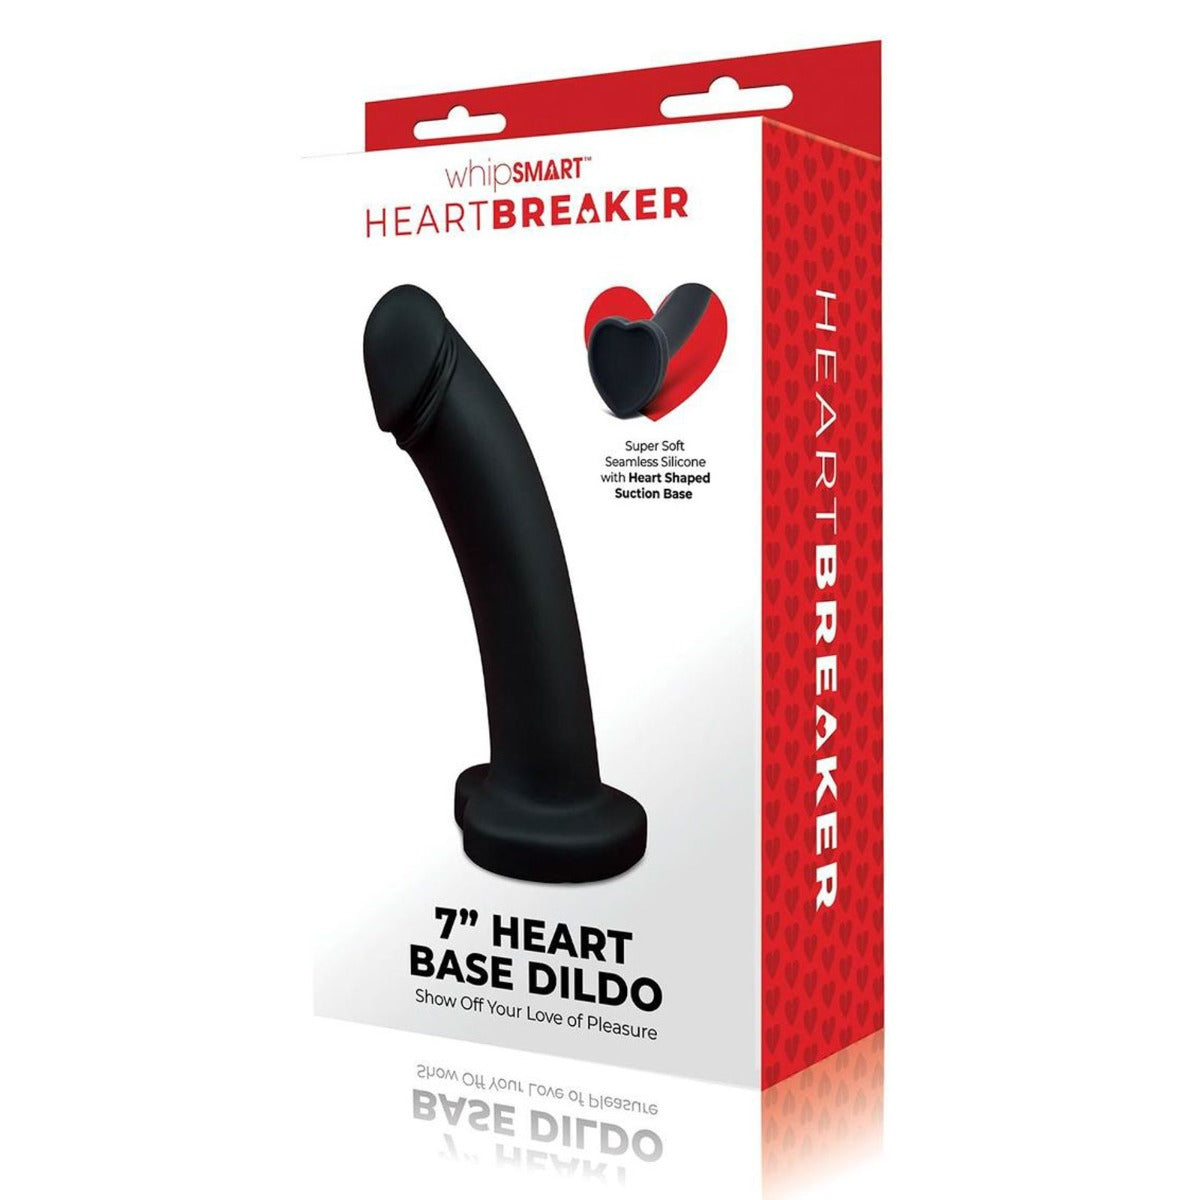 WhipSMART | HEARTBREAKER 7 Inch Heart Based Dildo - Black